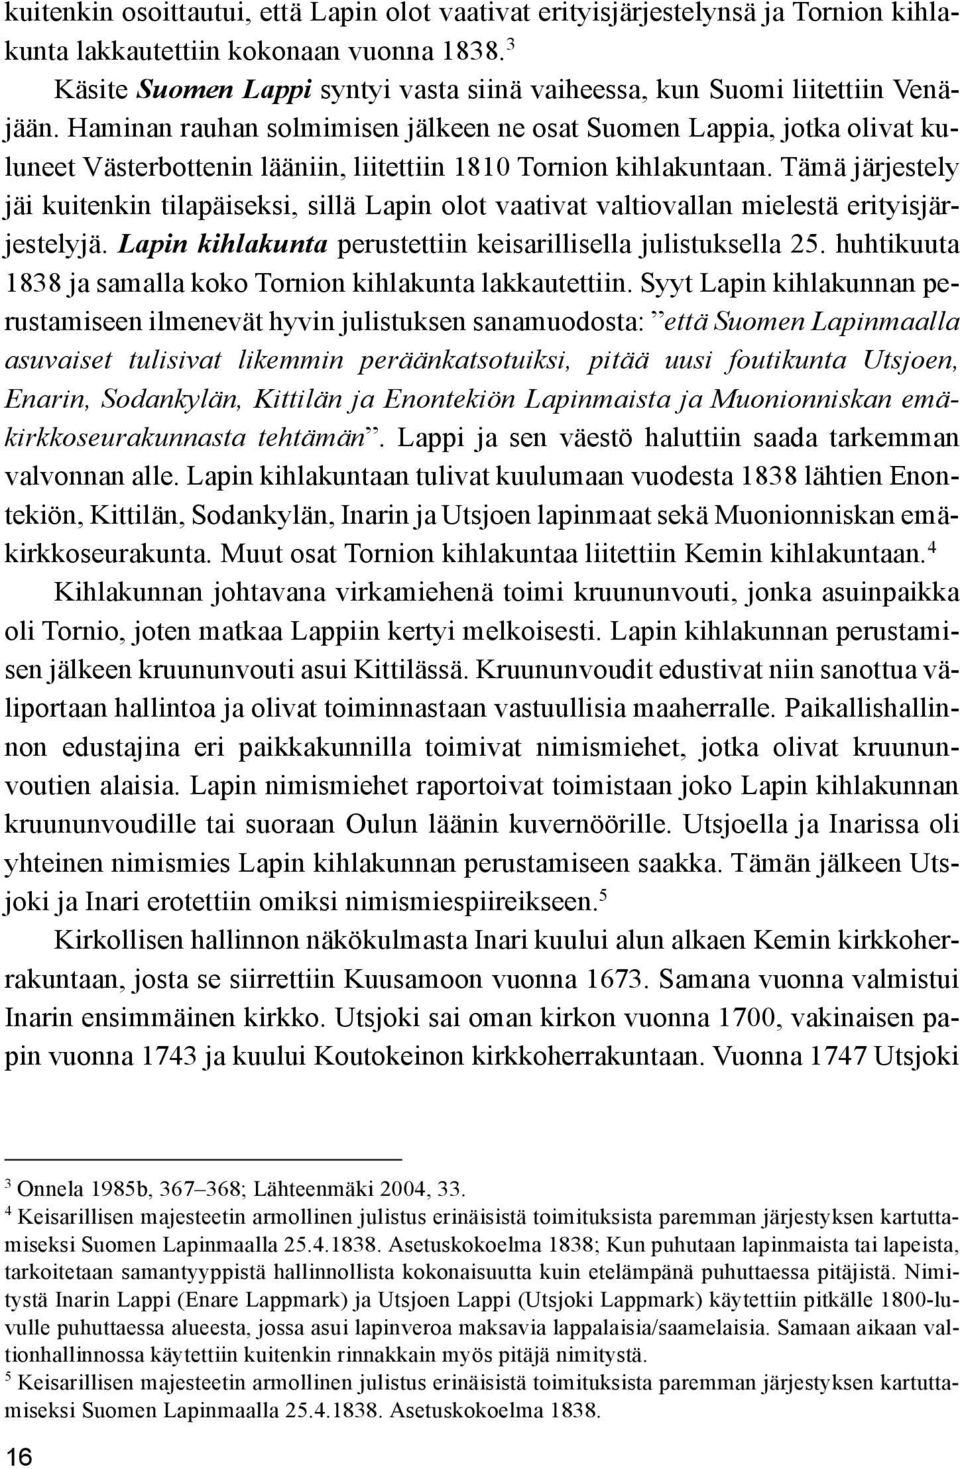 Haminan rauhan solmimisen jälkeen ne osat Suomen Lappia, jotka olivat kuluneet Västerbottenin lääniin, liitettiin 1810 Tornion kihlakuntaan.